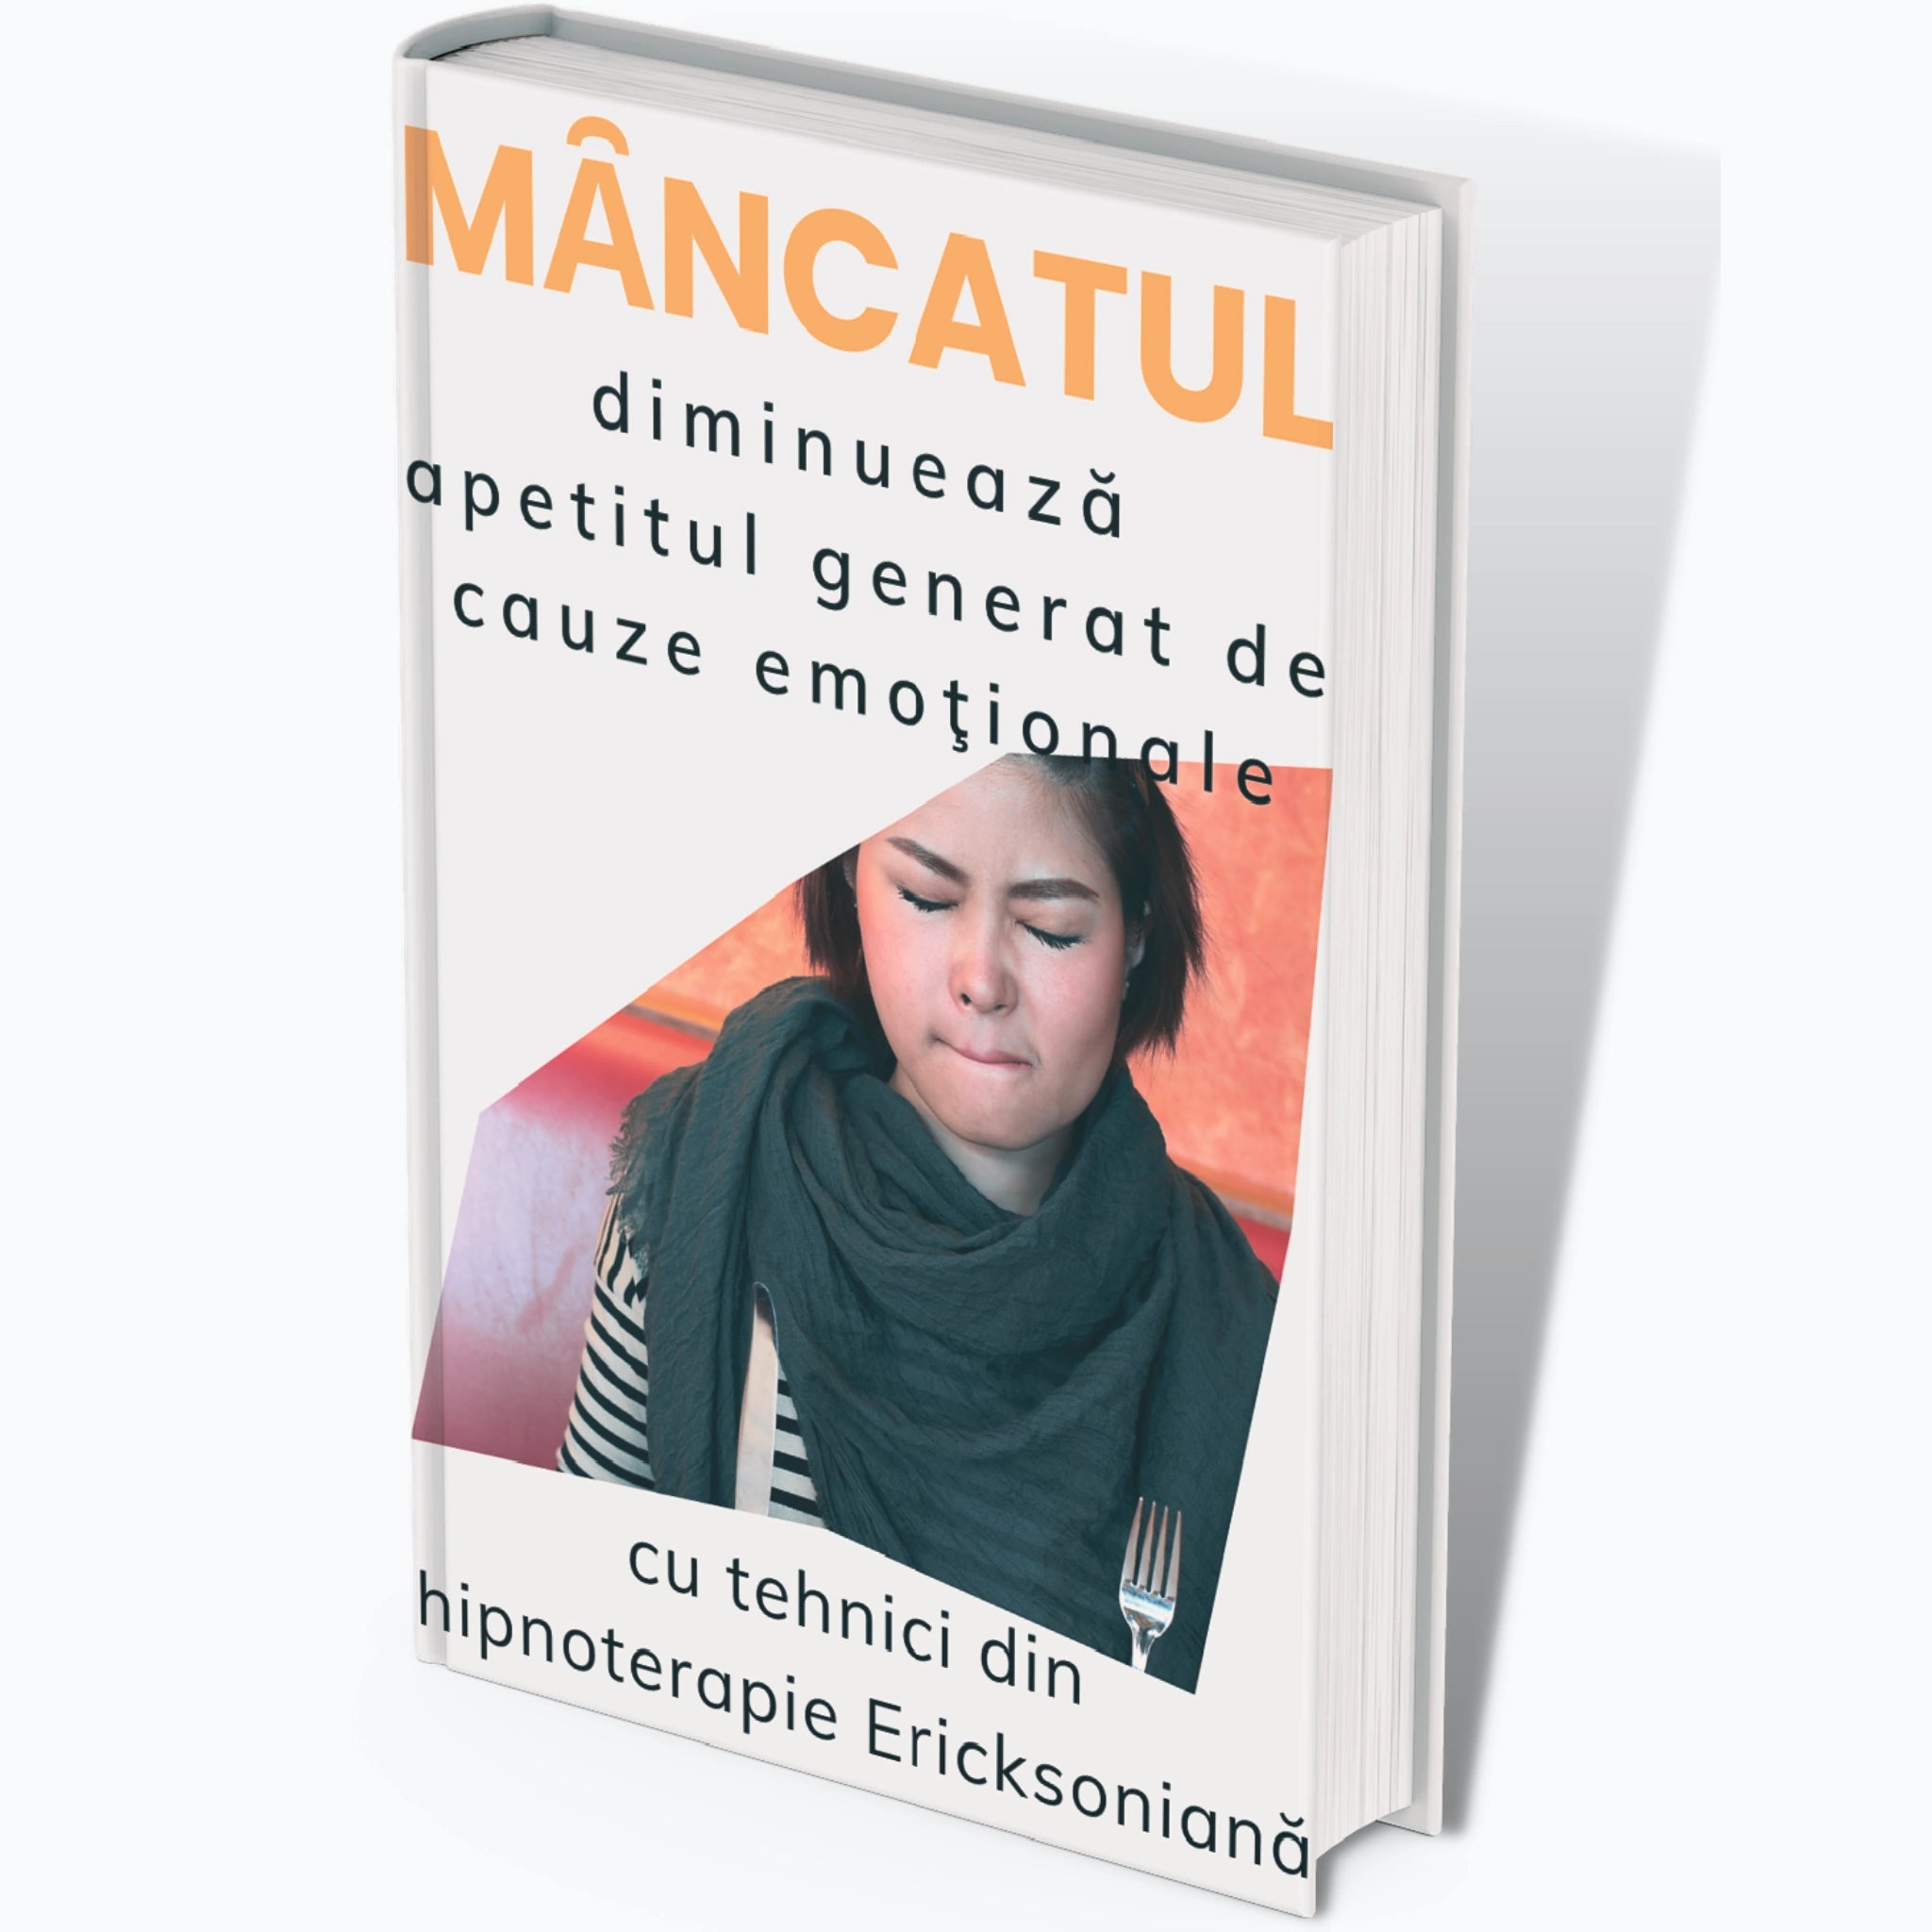 Coperta audiobook "Mancatul: diminueaza apetitul generat de cauze emotionale"